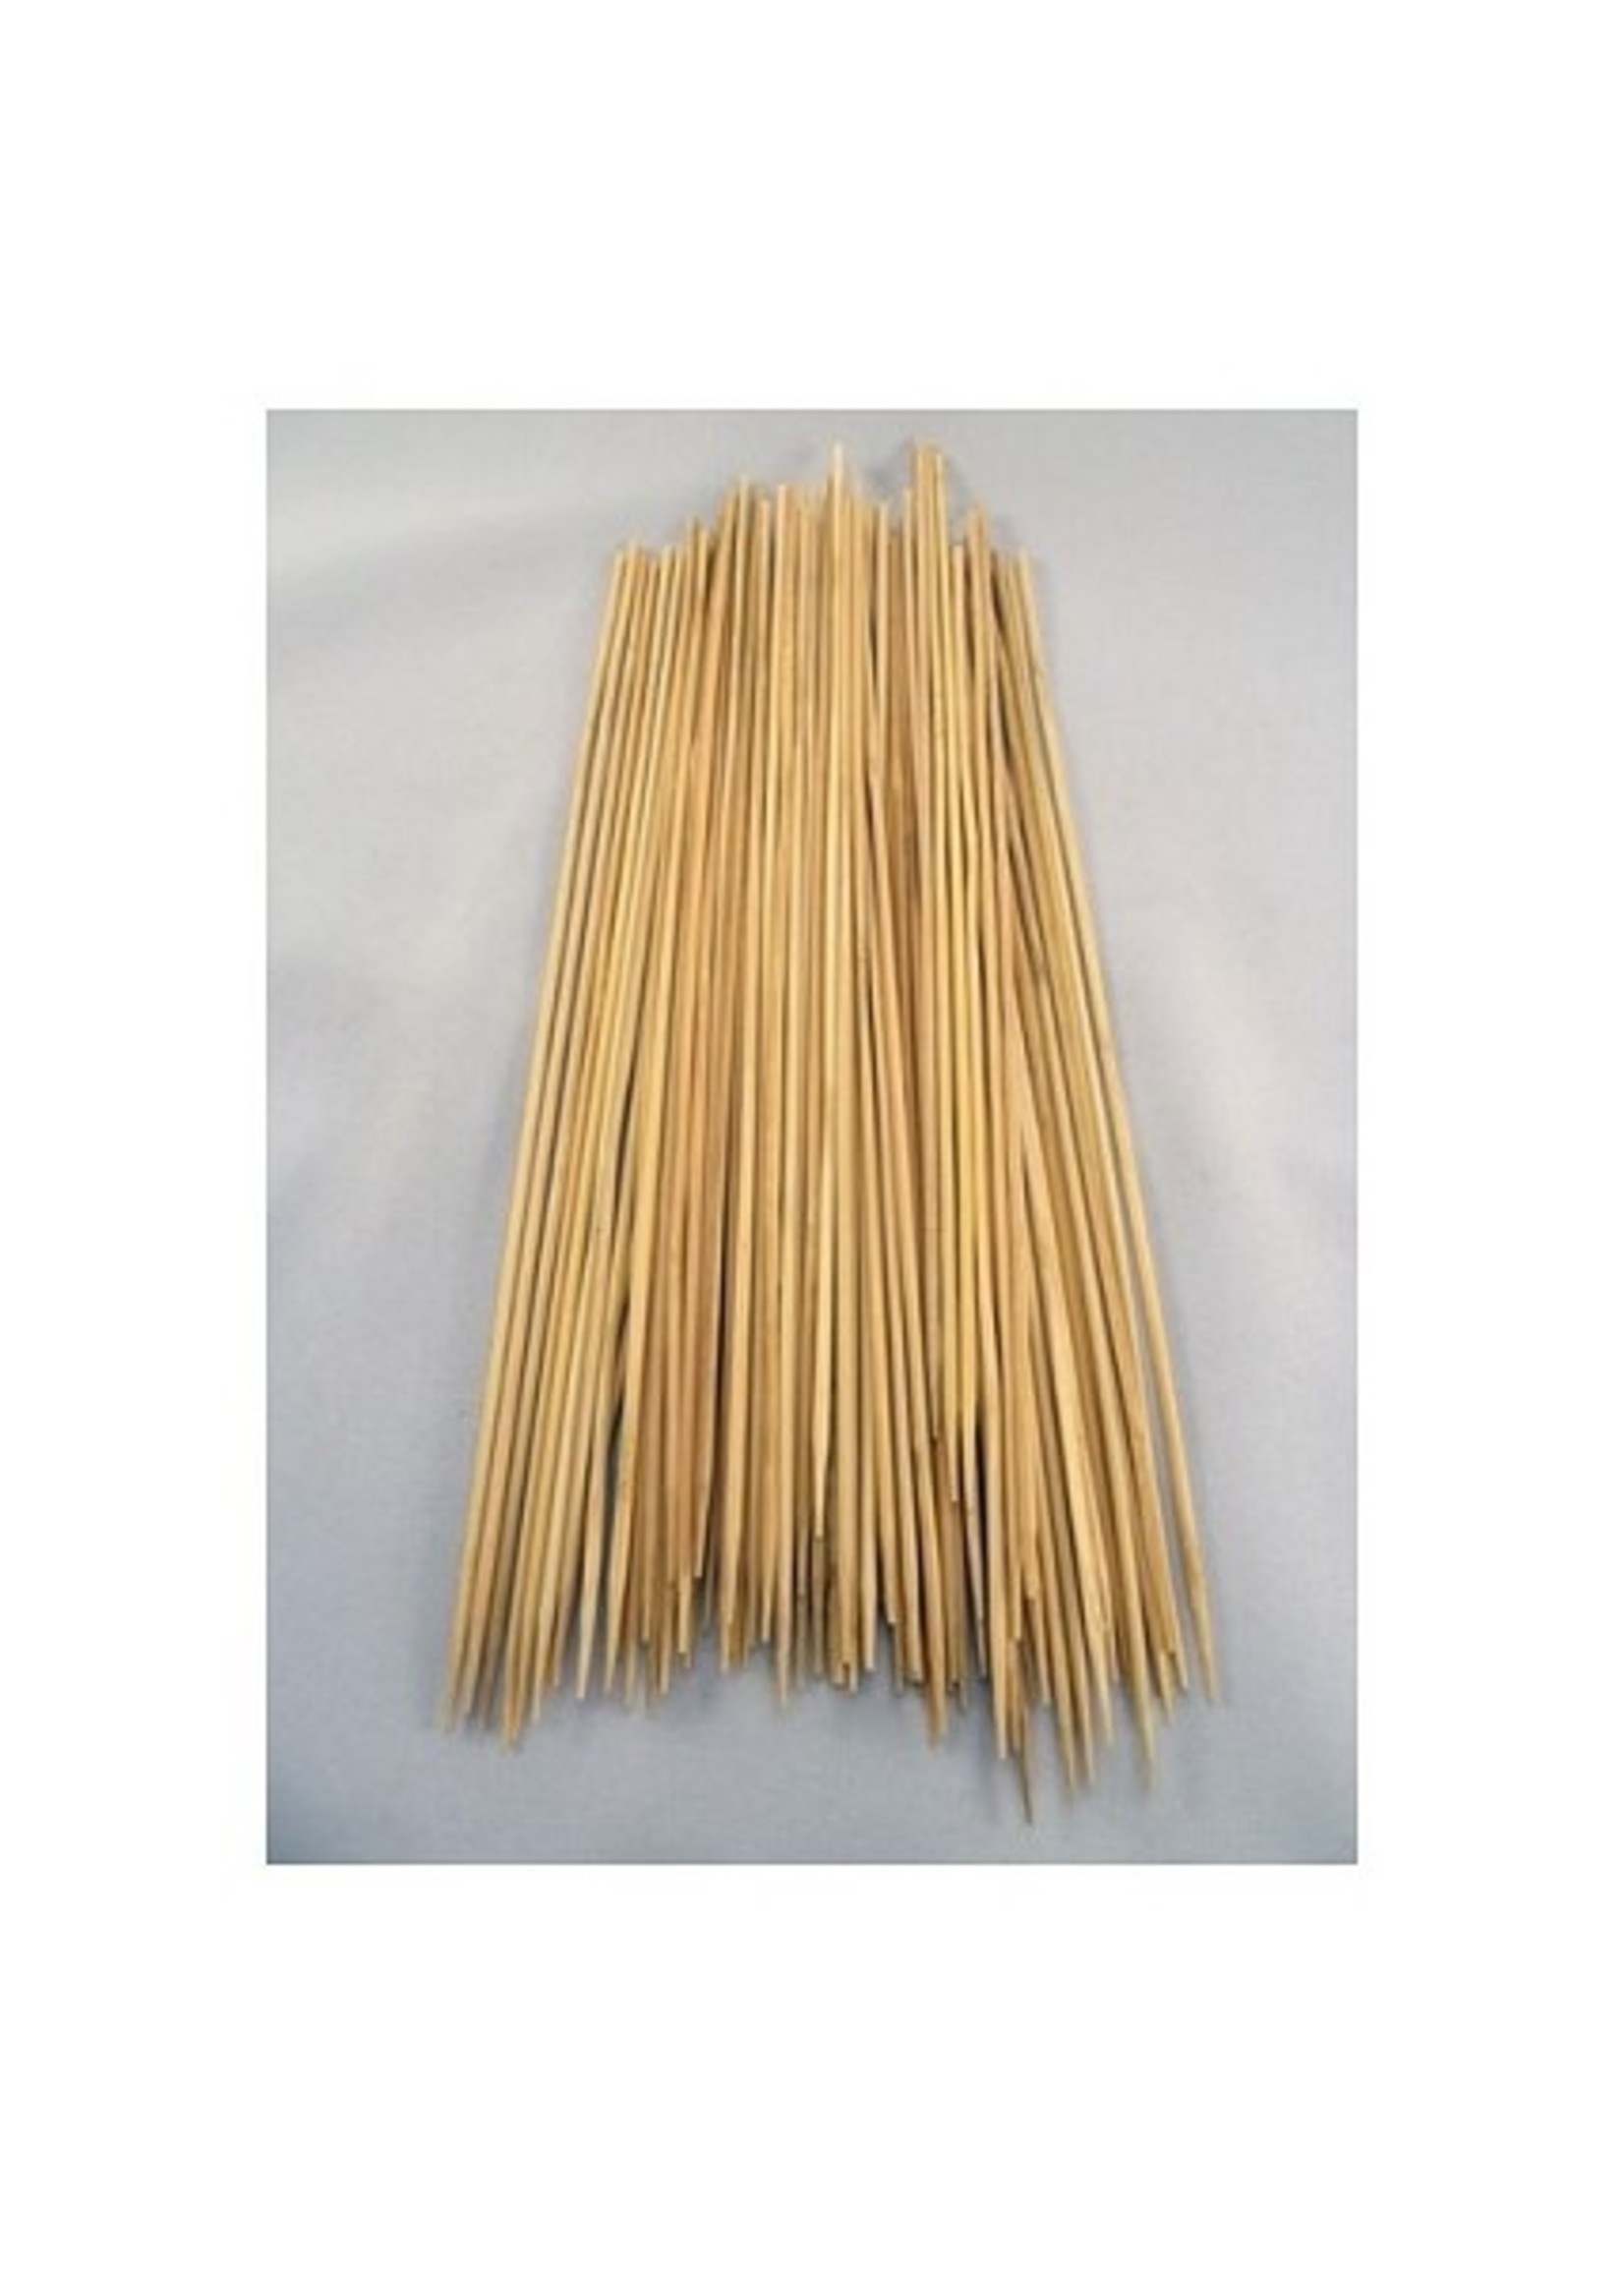 Sateprikkers bamboe 30cm zak a 100 st